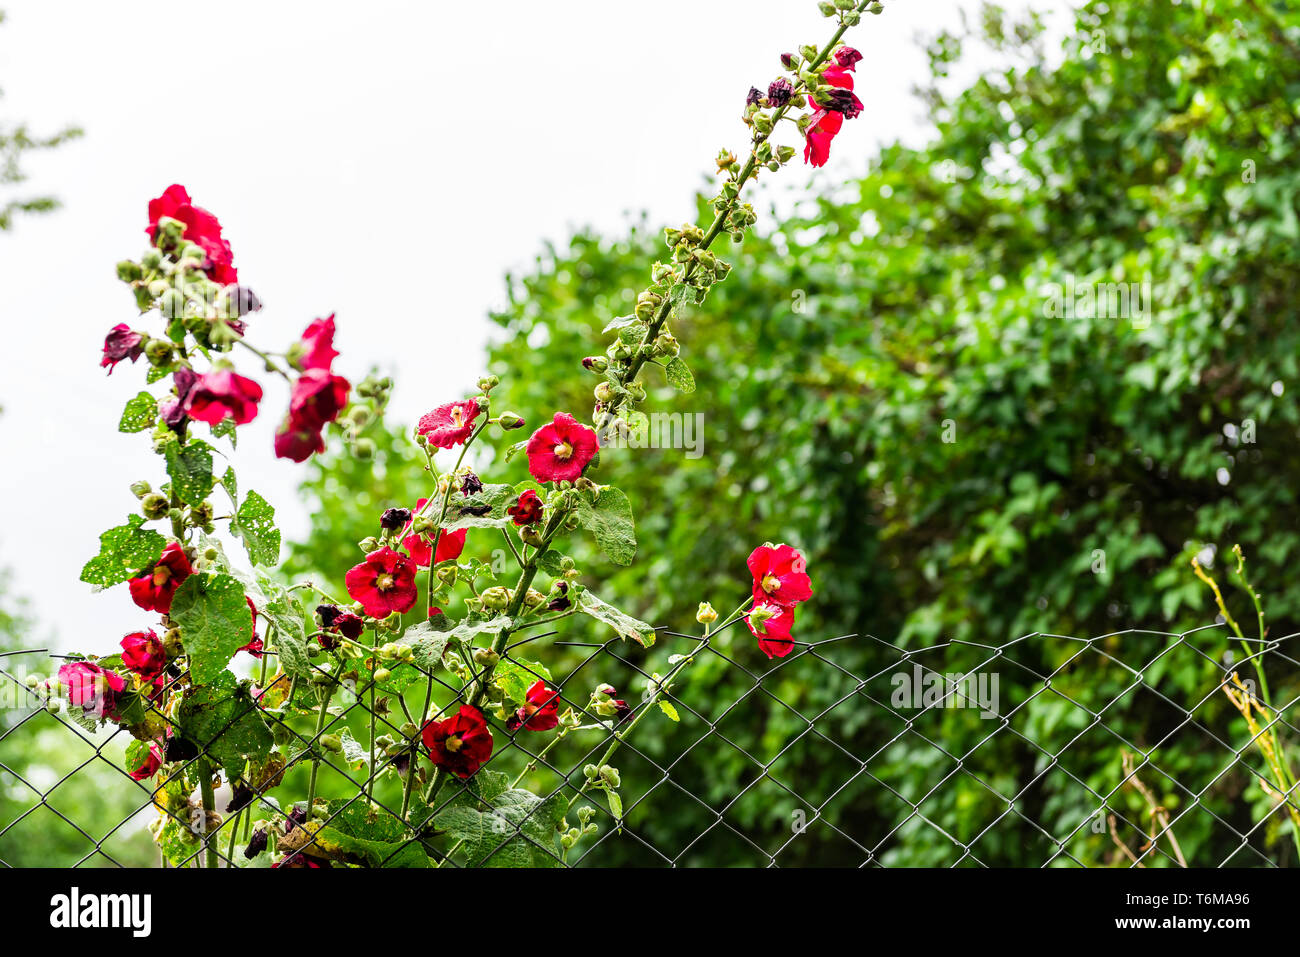 Garten im grünen Sommer in der Ukraine mit Laub und rot rosa Malva klettern Blumen mit niemand Stockfoto